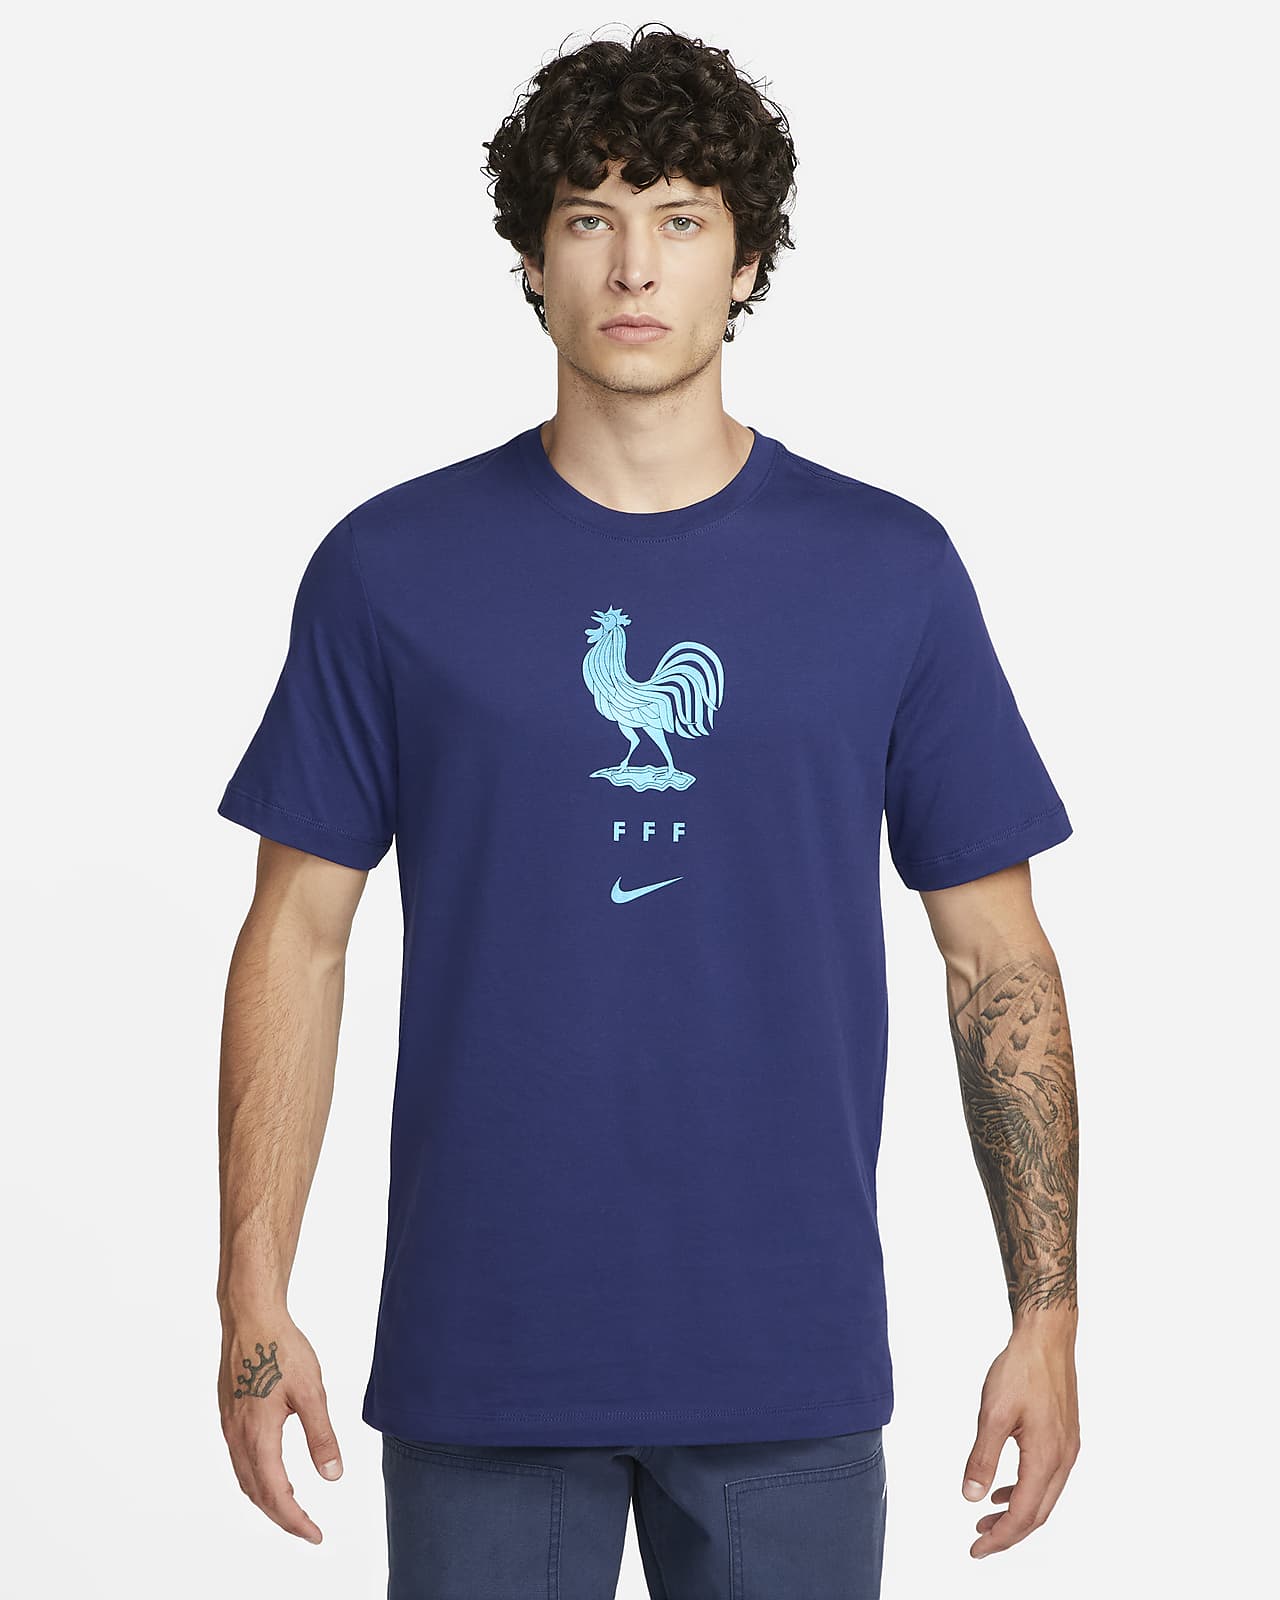 Descent møbel Blive ved FFF Crest Men's Nike T-Shirt. Nike.com